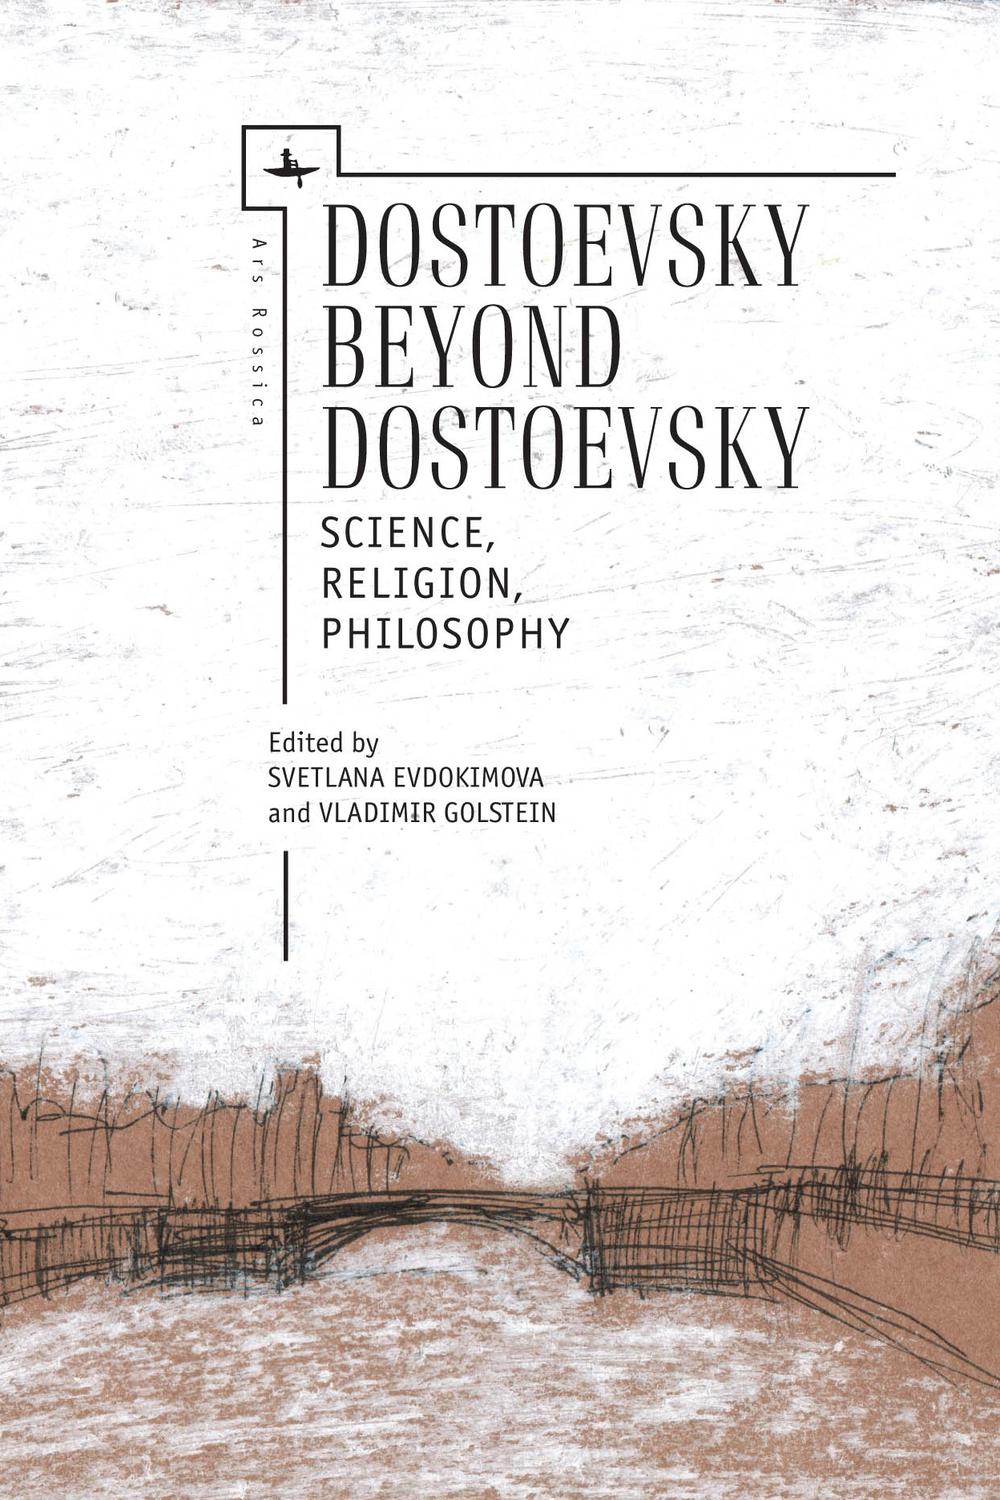 Dostoevsky Beyond Dostoevsky - Vladimir Golstein, Svetlana Evdokimova